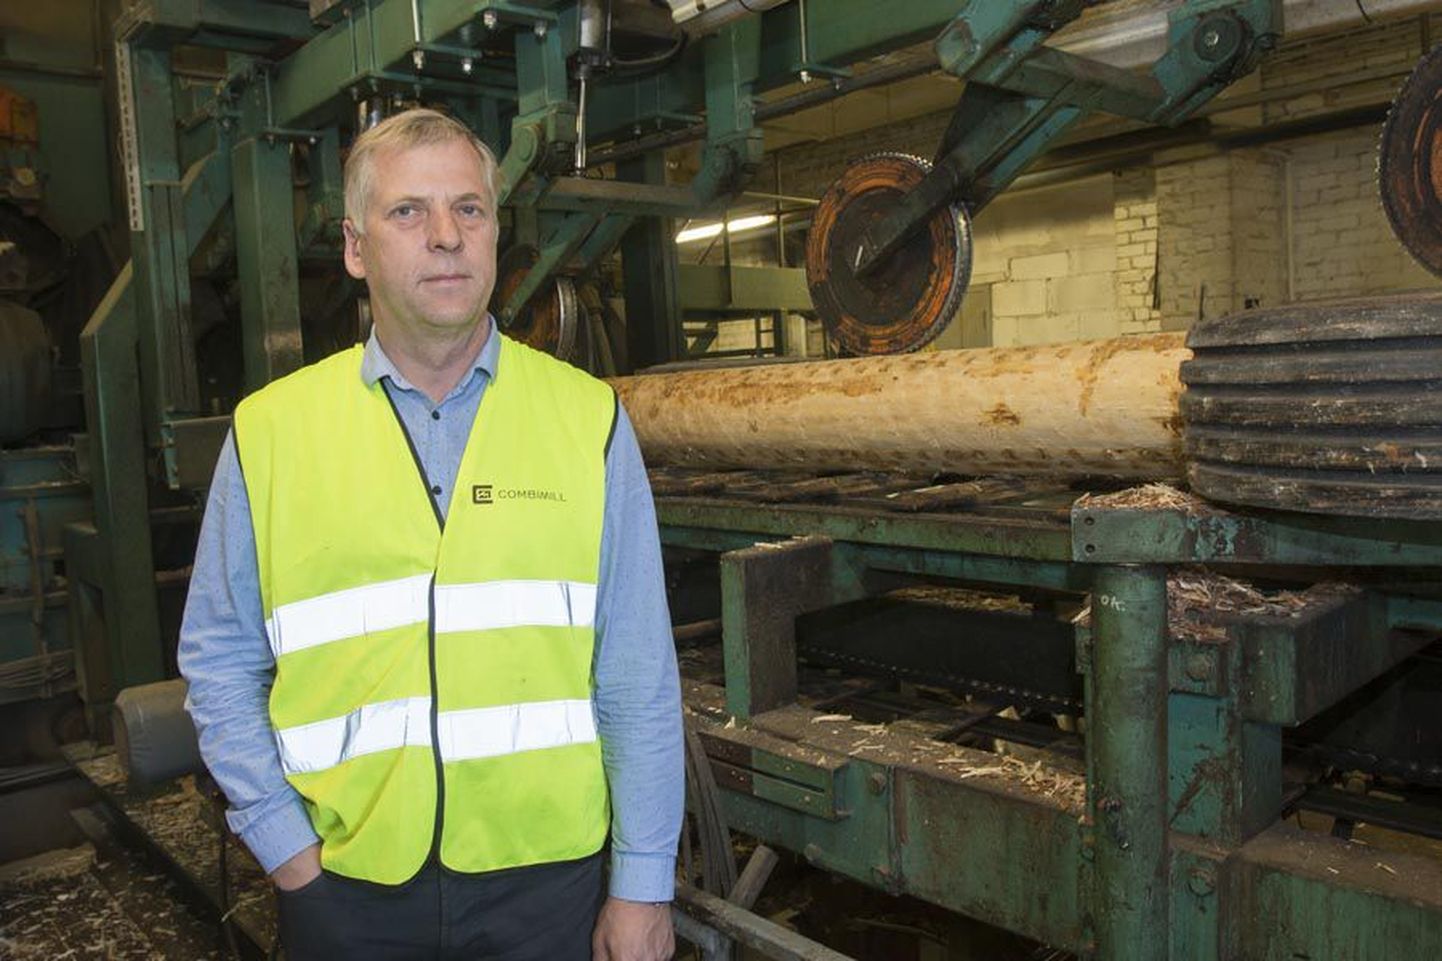 Pika puidutööstuses tegutsemise kogemusega Margus Kohava oli mitme aasta vältel ametis Suure-Jaani lähedal Kõidama külas tegutseva Combimilli saetööstuse arendamisega. Nüüd valmistab ta ette ligi miljard eurot maksva puidurafineerimistehase ehitust.